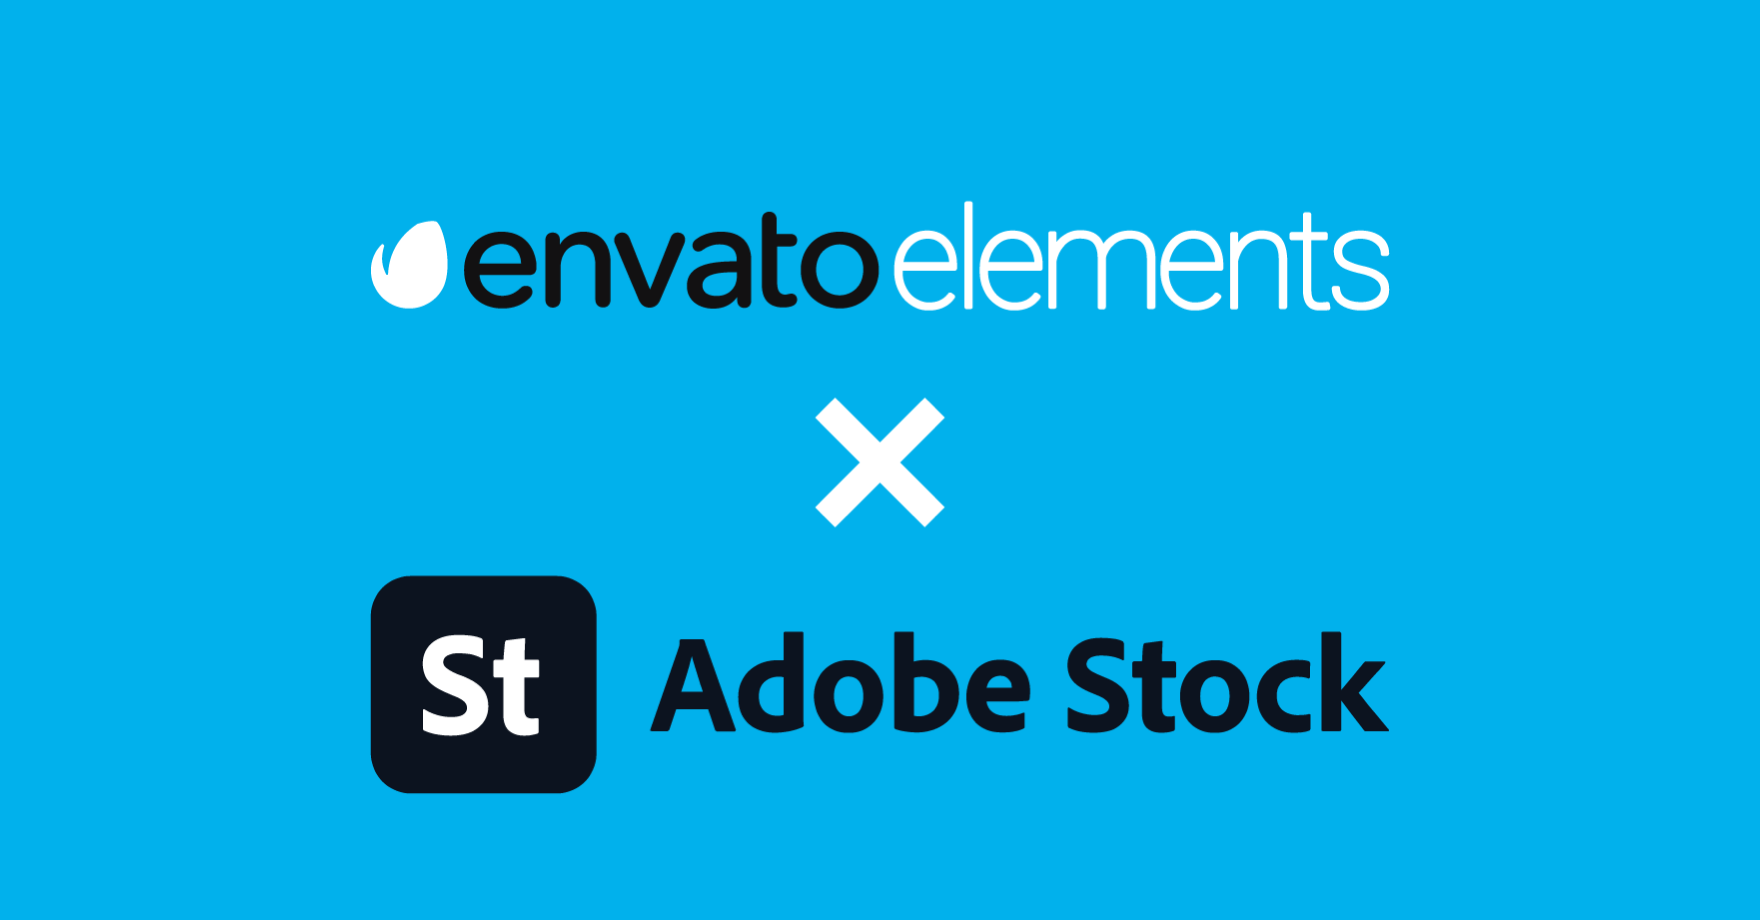 Comparativo: Envato Elements x Adobe Stock qual é melhor? - Blog do Kotas